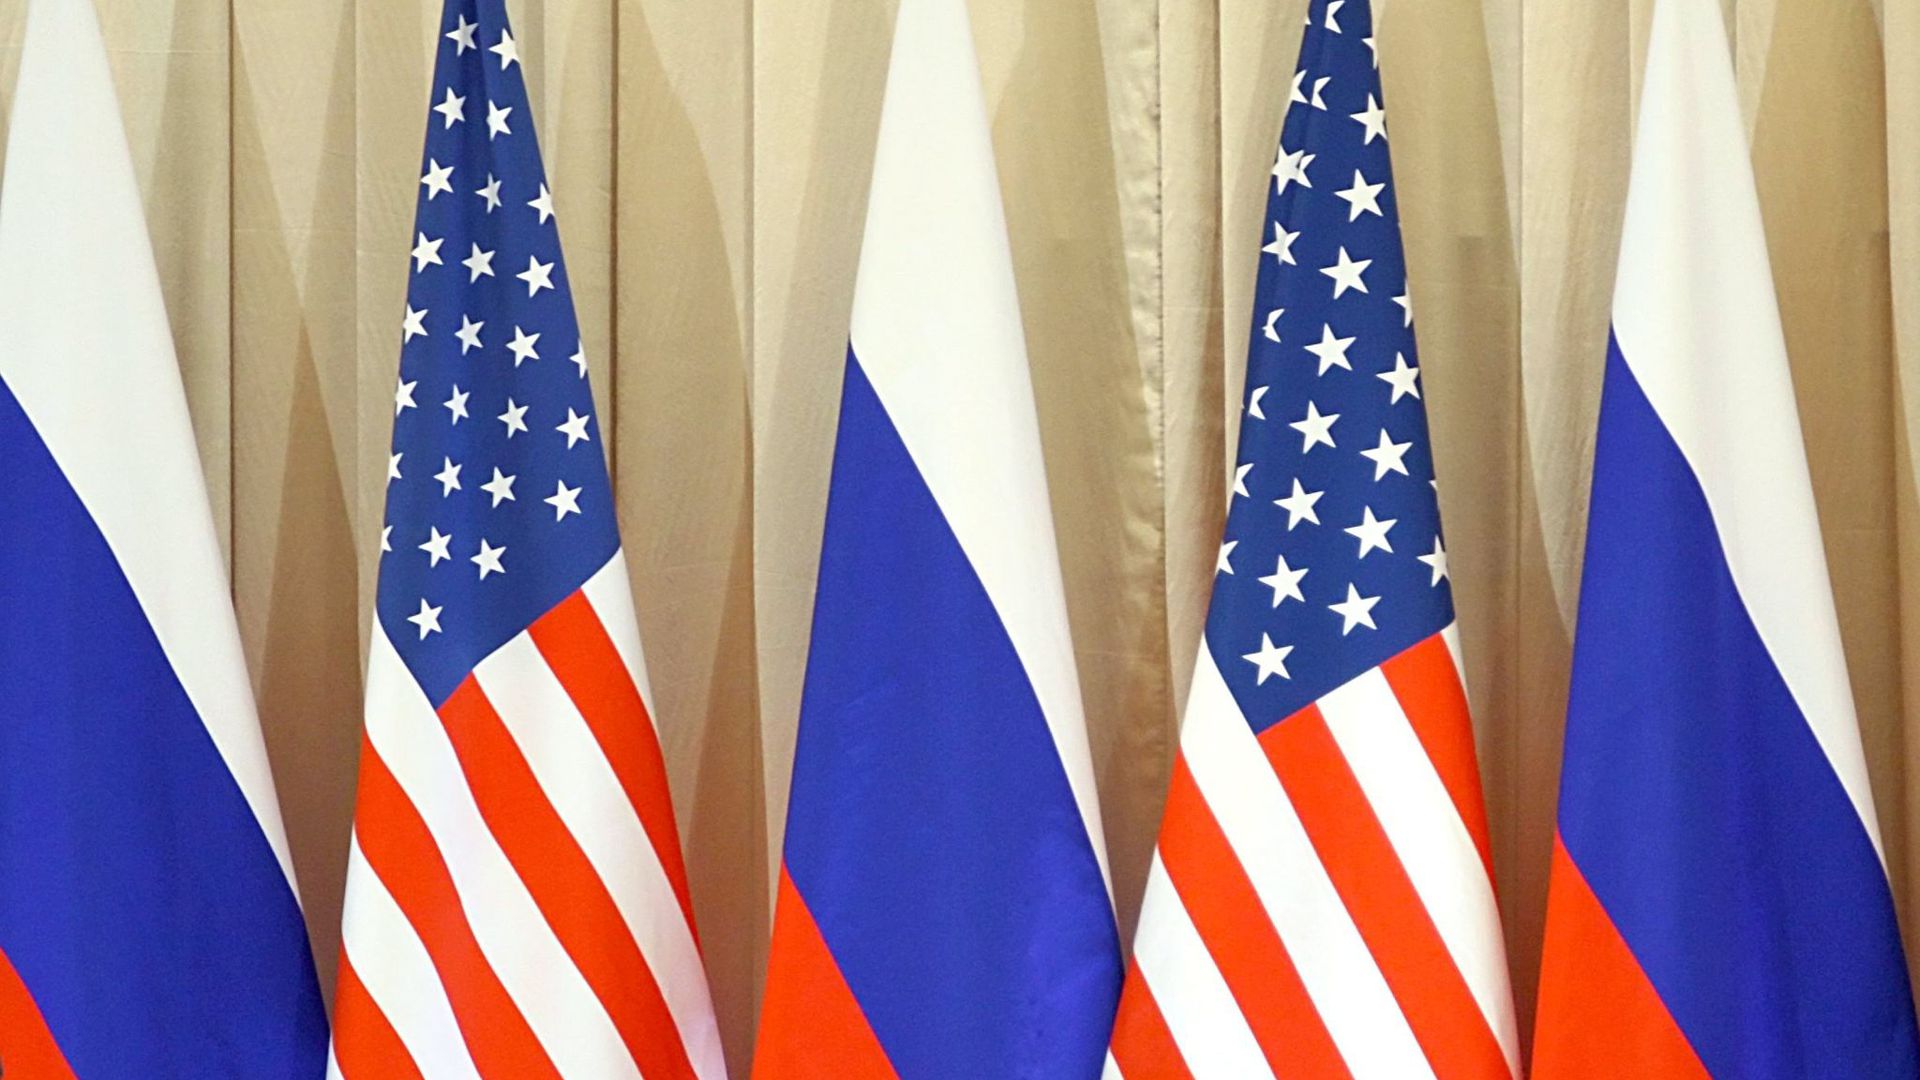 Auslöser der jüngsten Spannungen zwischen den USA und Russland war eine Interviewaussage von US-Präsident Biden: Dieser hatte die Frage bejaht, ob er seinen russischen Amtskollegen Putin für einen „Killer“ halte.